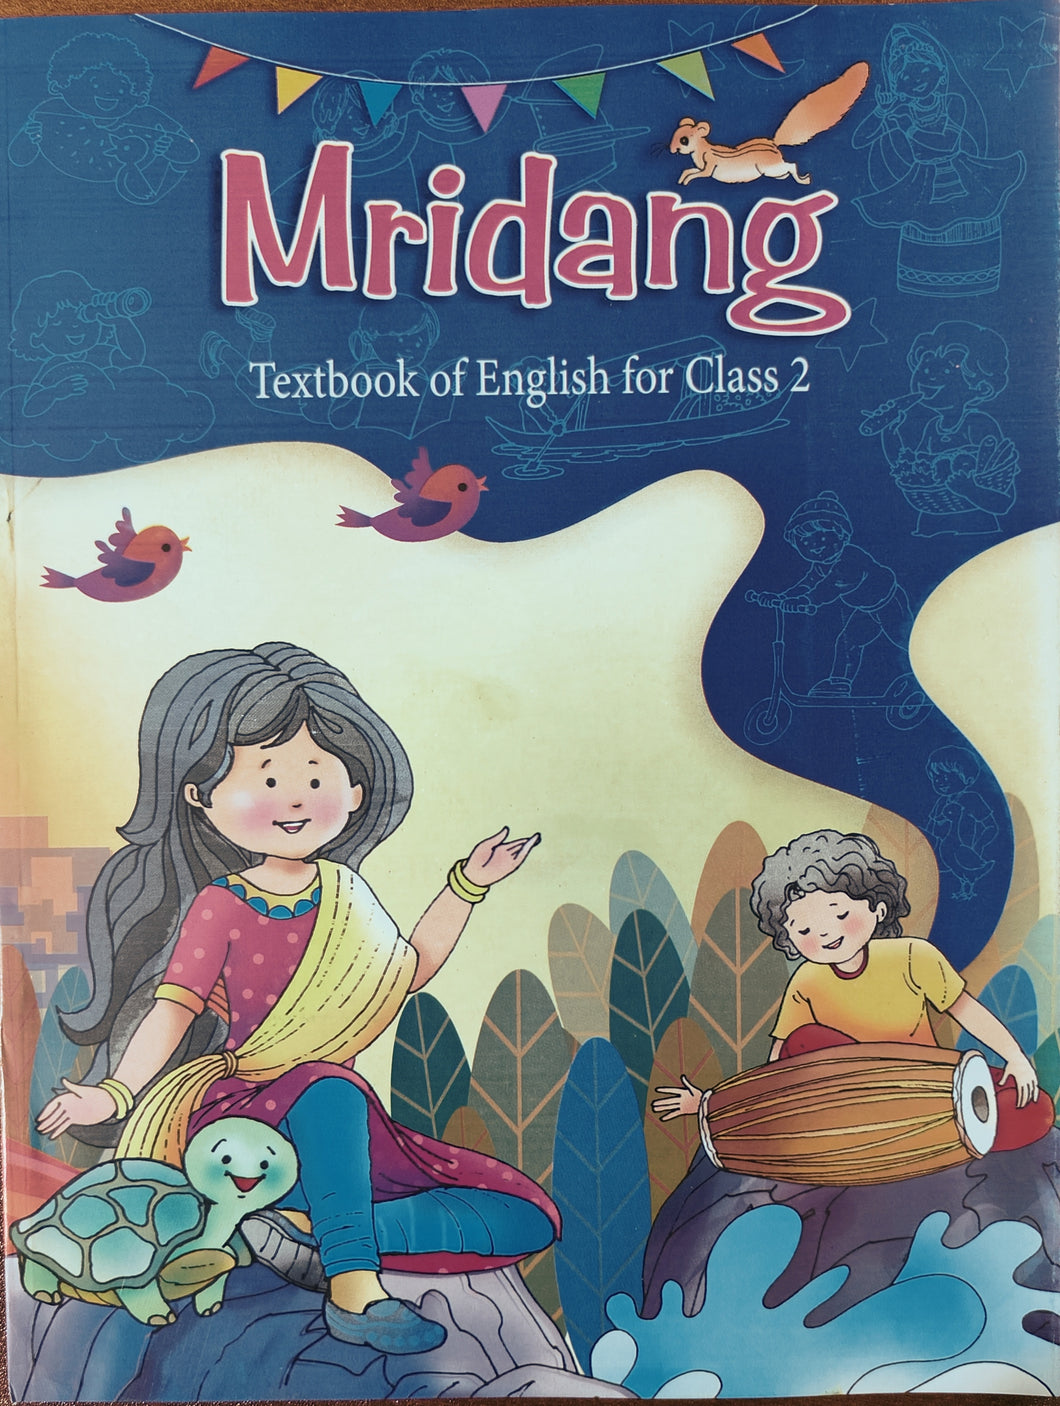 NCERT Mridang English Book - Class 2 - latest edition as per NCERT/CBSE - Booksfy